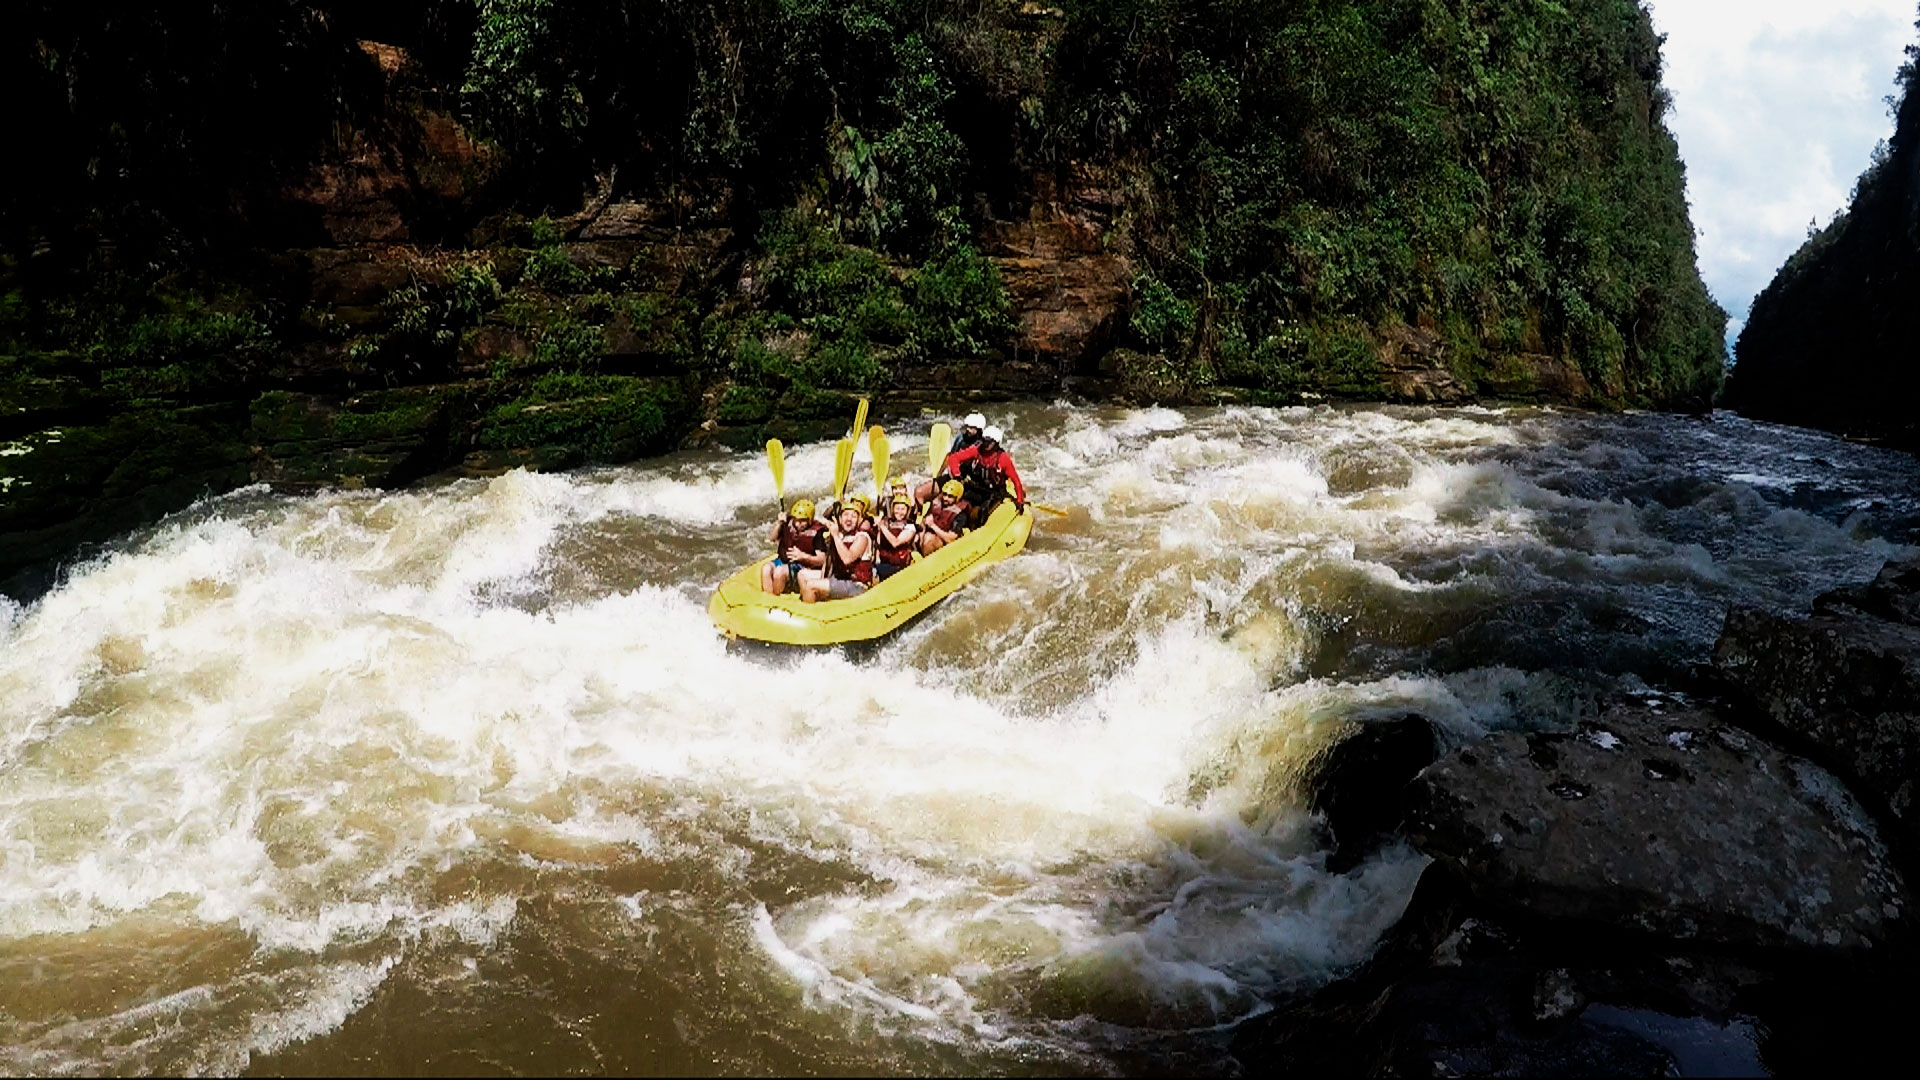 Grupo de pessoas praticando rafting no rio jaguariaíva, em Piraí do Sul.